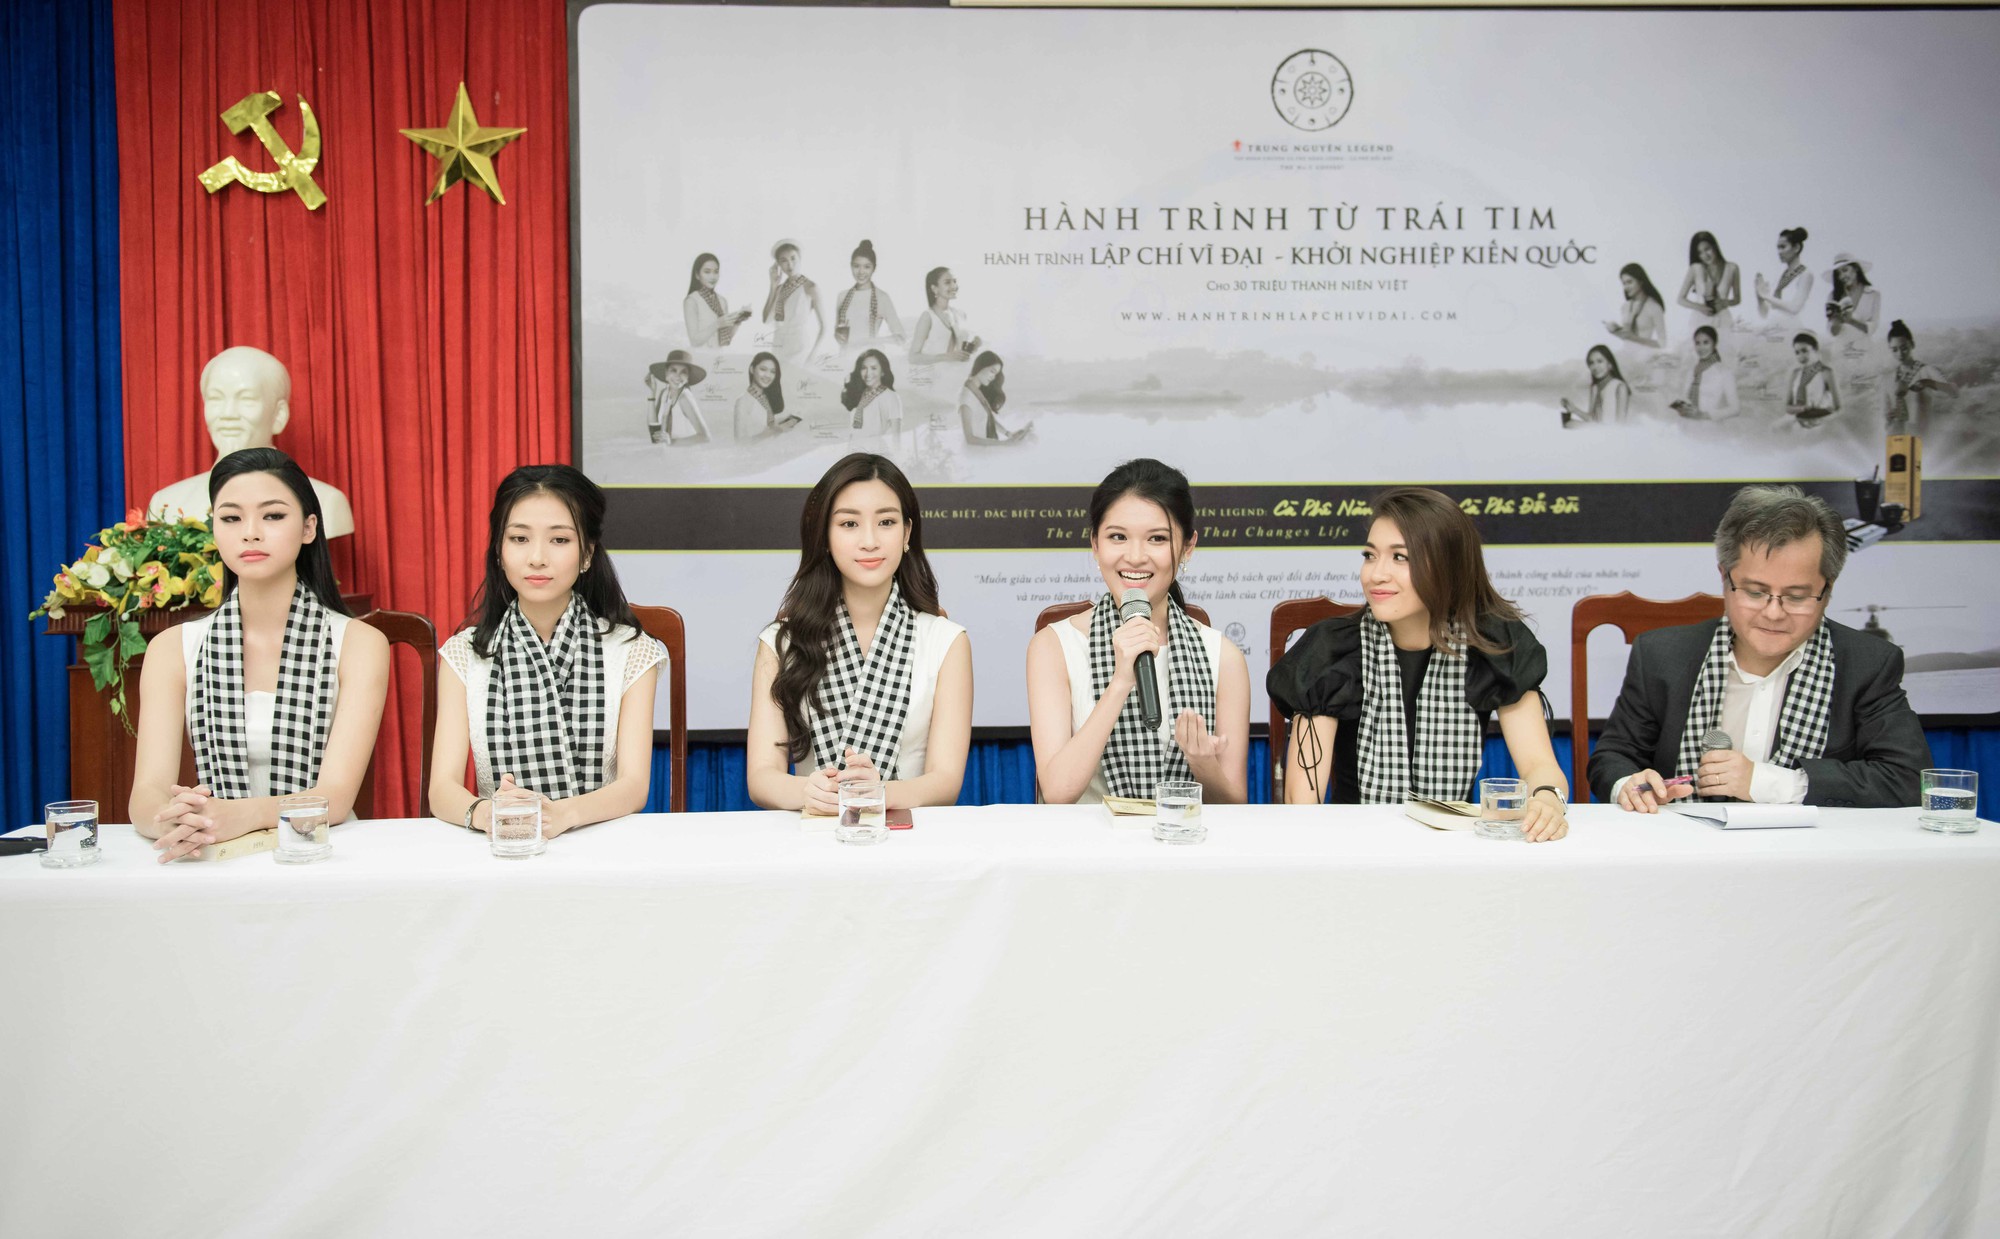 Hoa hậu Đỗ Mỹ Linh khoe dáng cùng Á hậu Thùy Dung bên siêu xe 50 tỷ đồng - Ảnh 6.